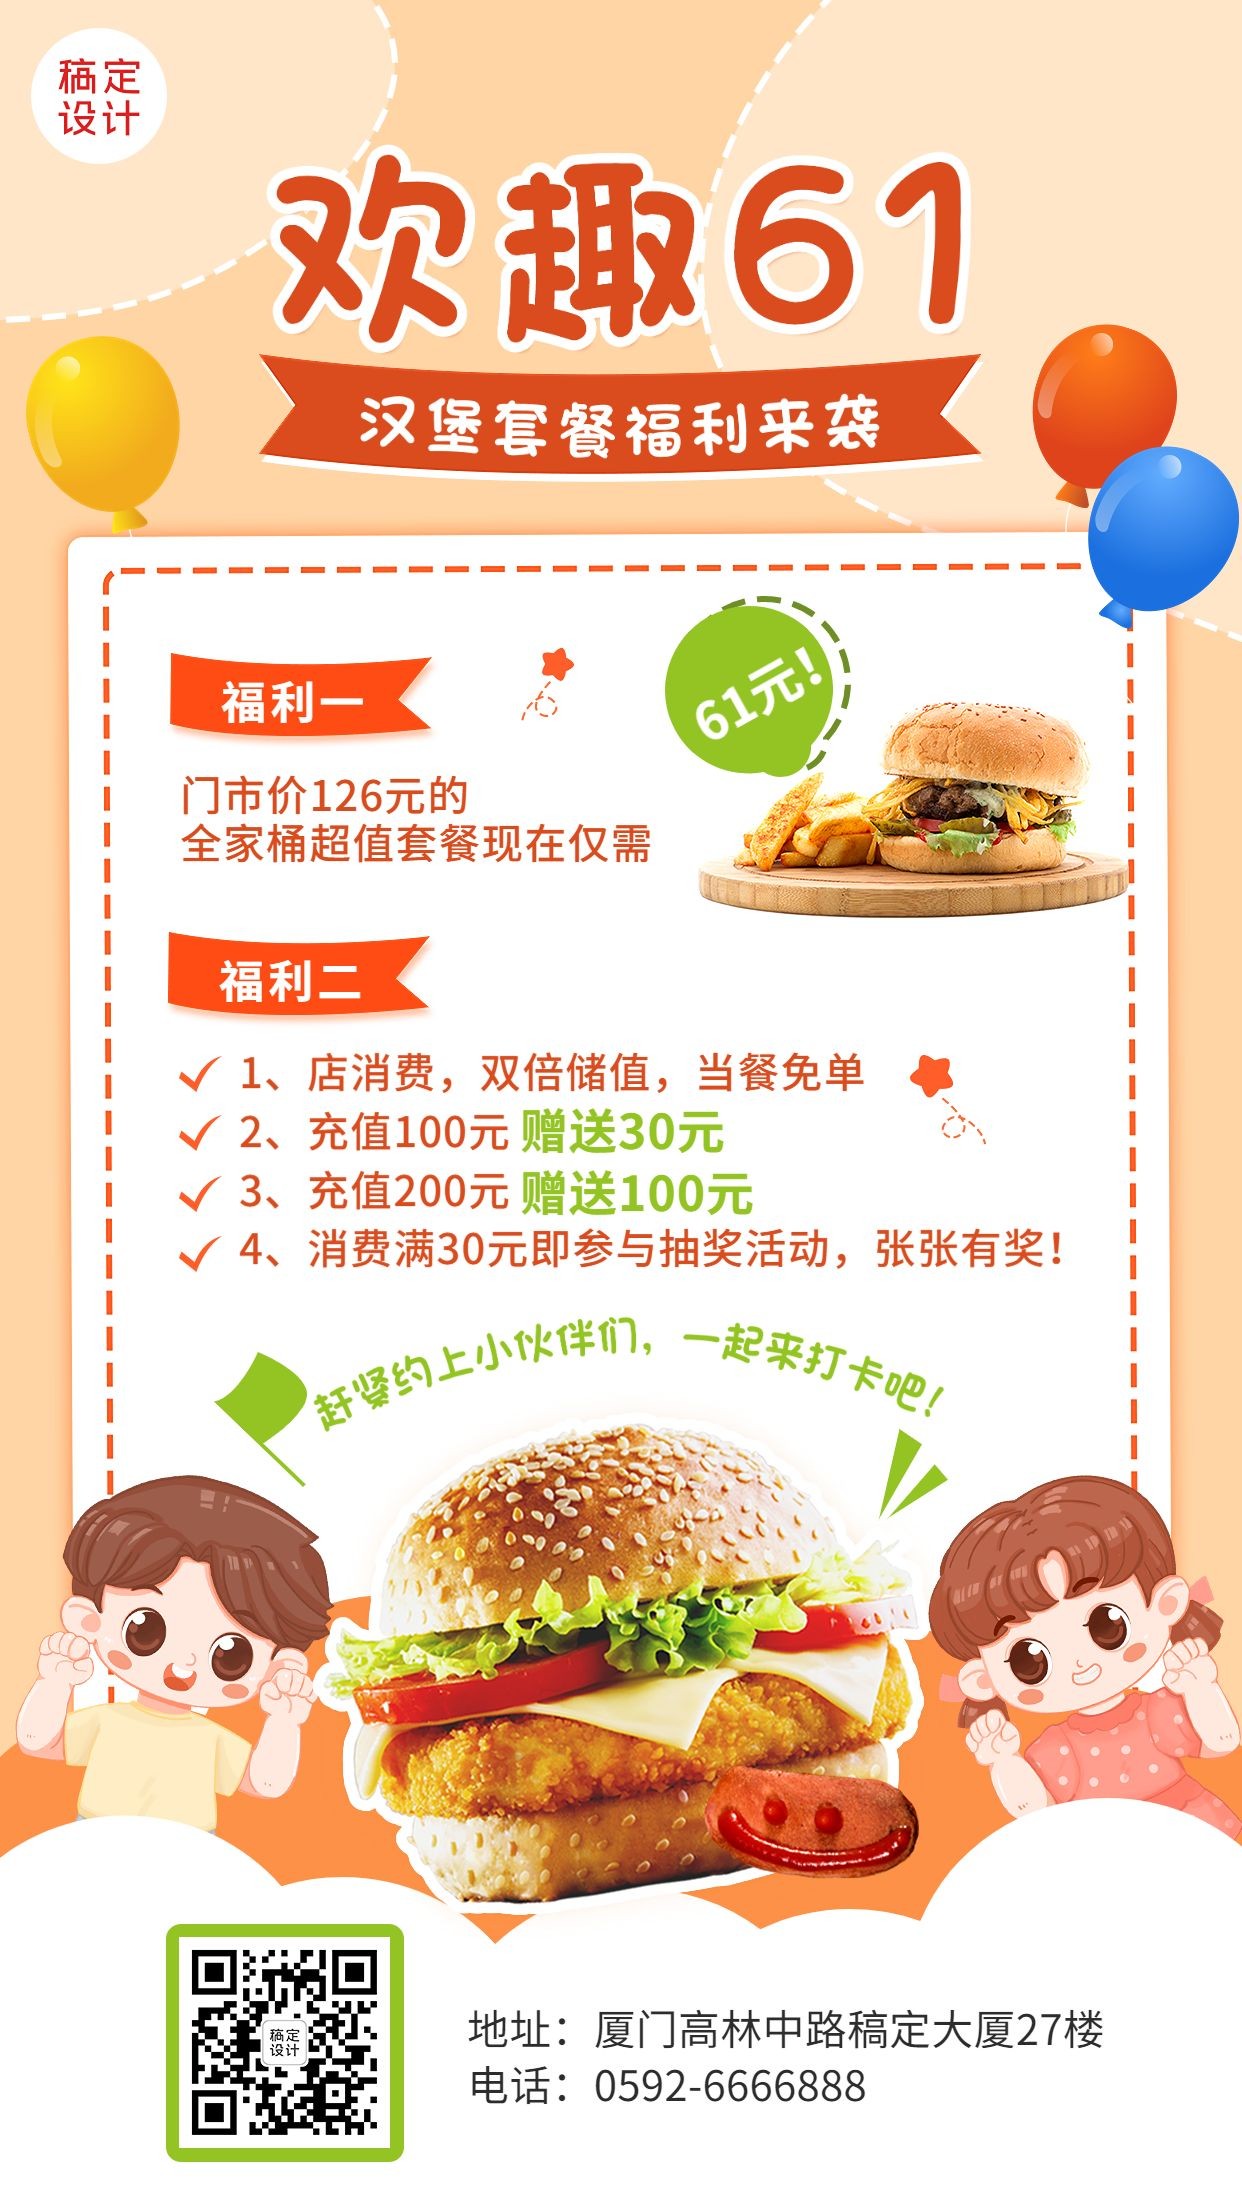 儿童节餐饮炸鸡汉堡产品促销手机海报预览效果